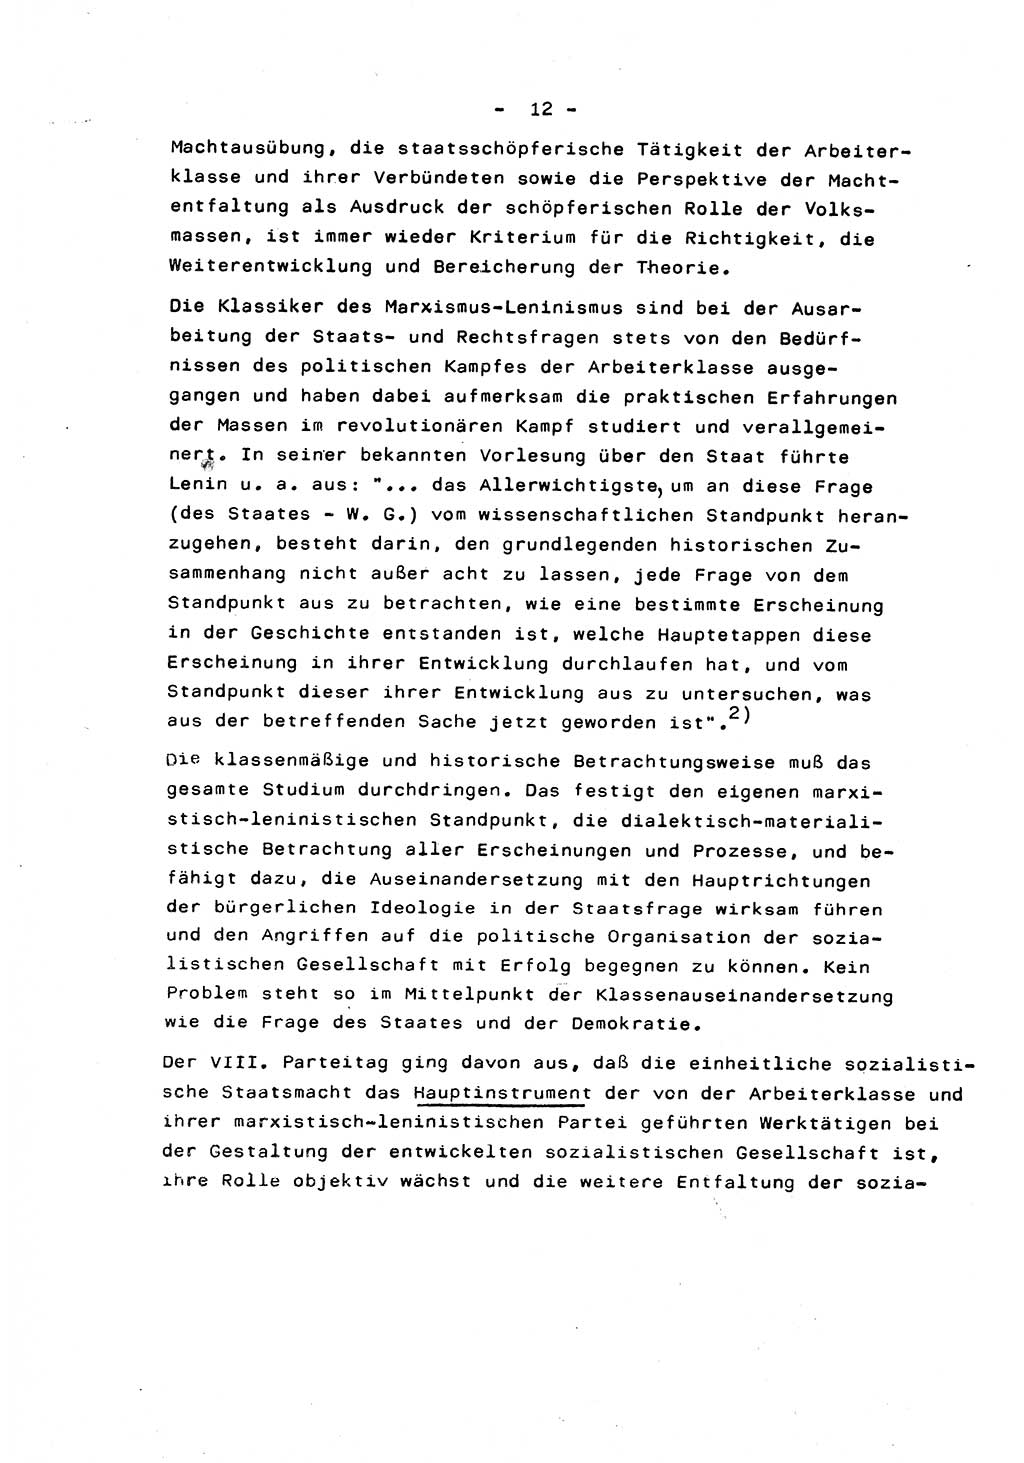 Marxistisch-leninistische Staats- und Rechtstheorie [Deutsche Demokratische Republik (DDR)] 1975, Seite 12 (ML St.-R.-Th. DDR 1975, S. 12)